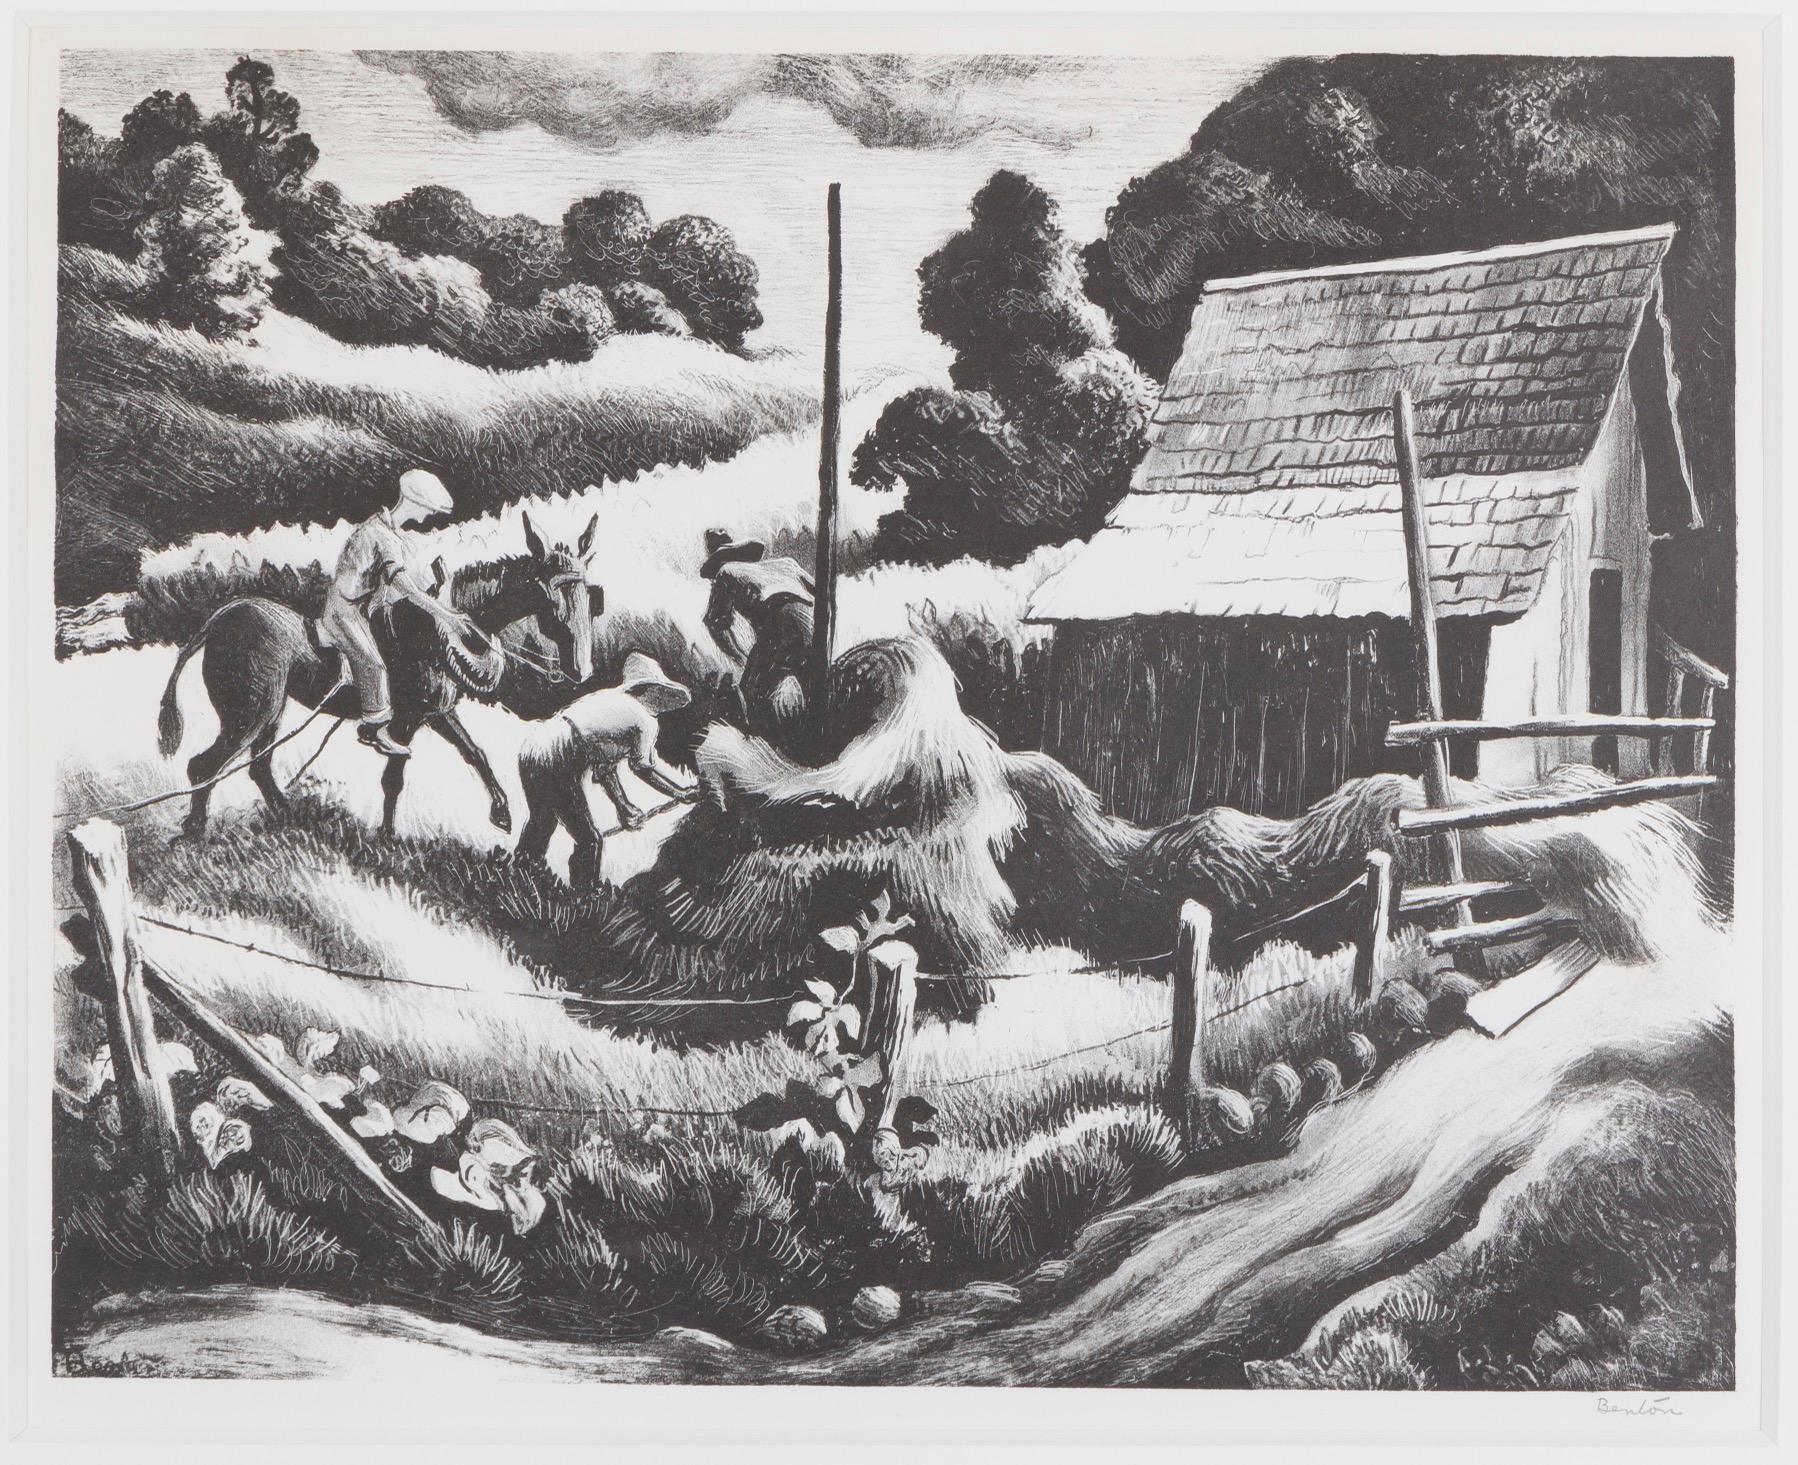 Haystack - Print by Thomas Hart Benton